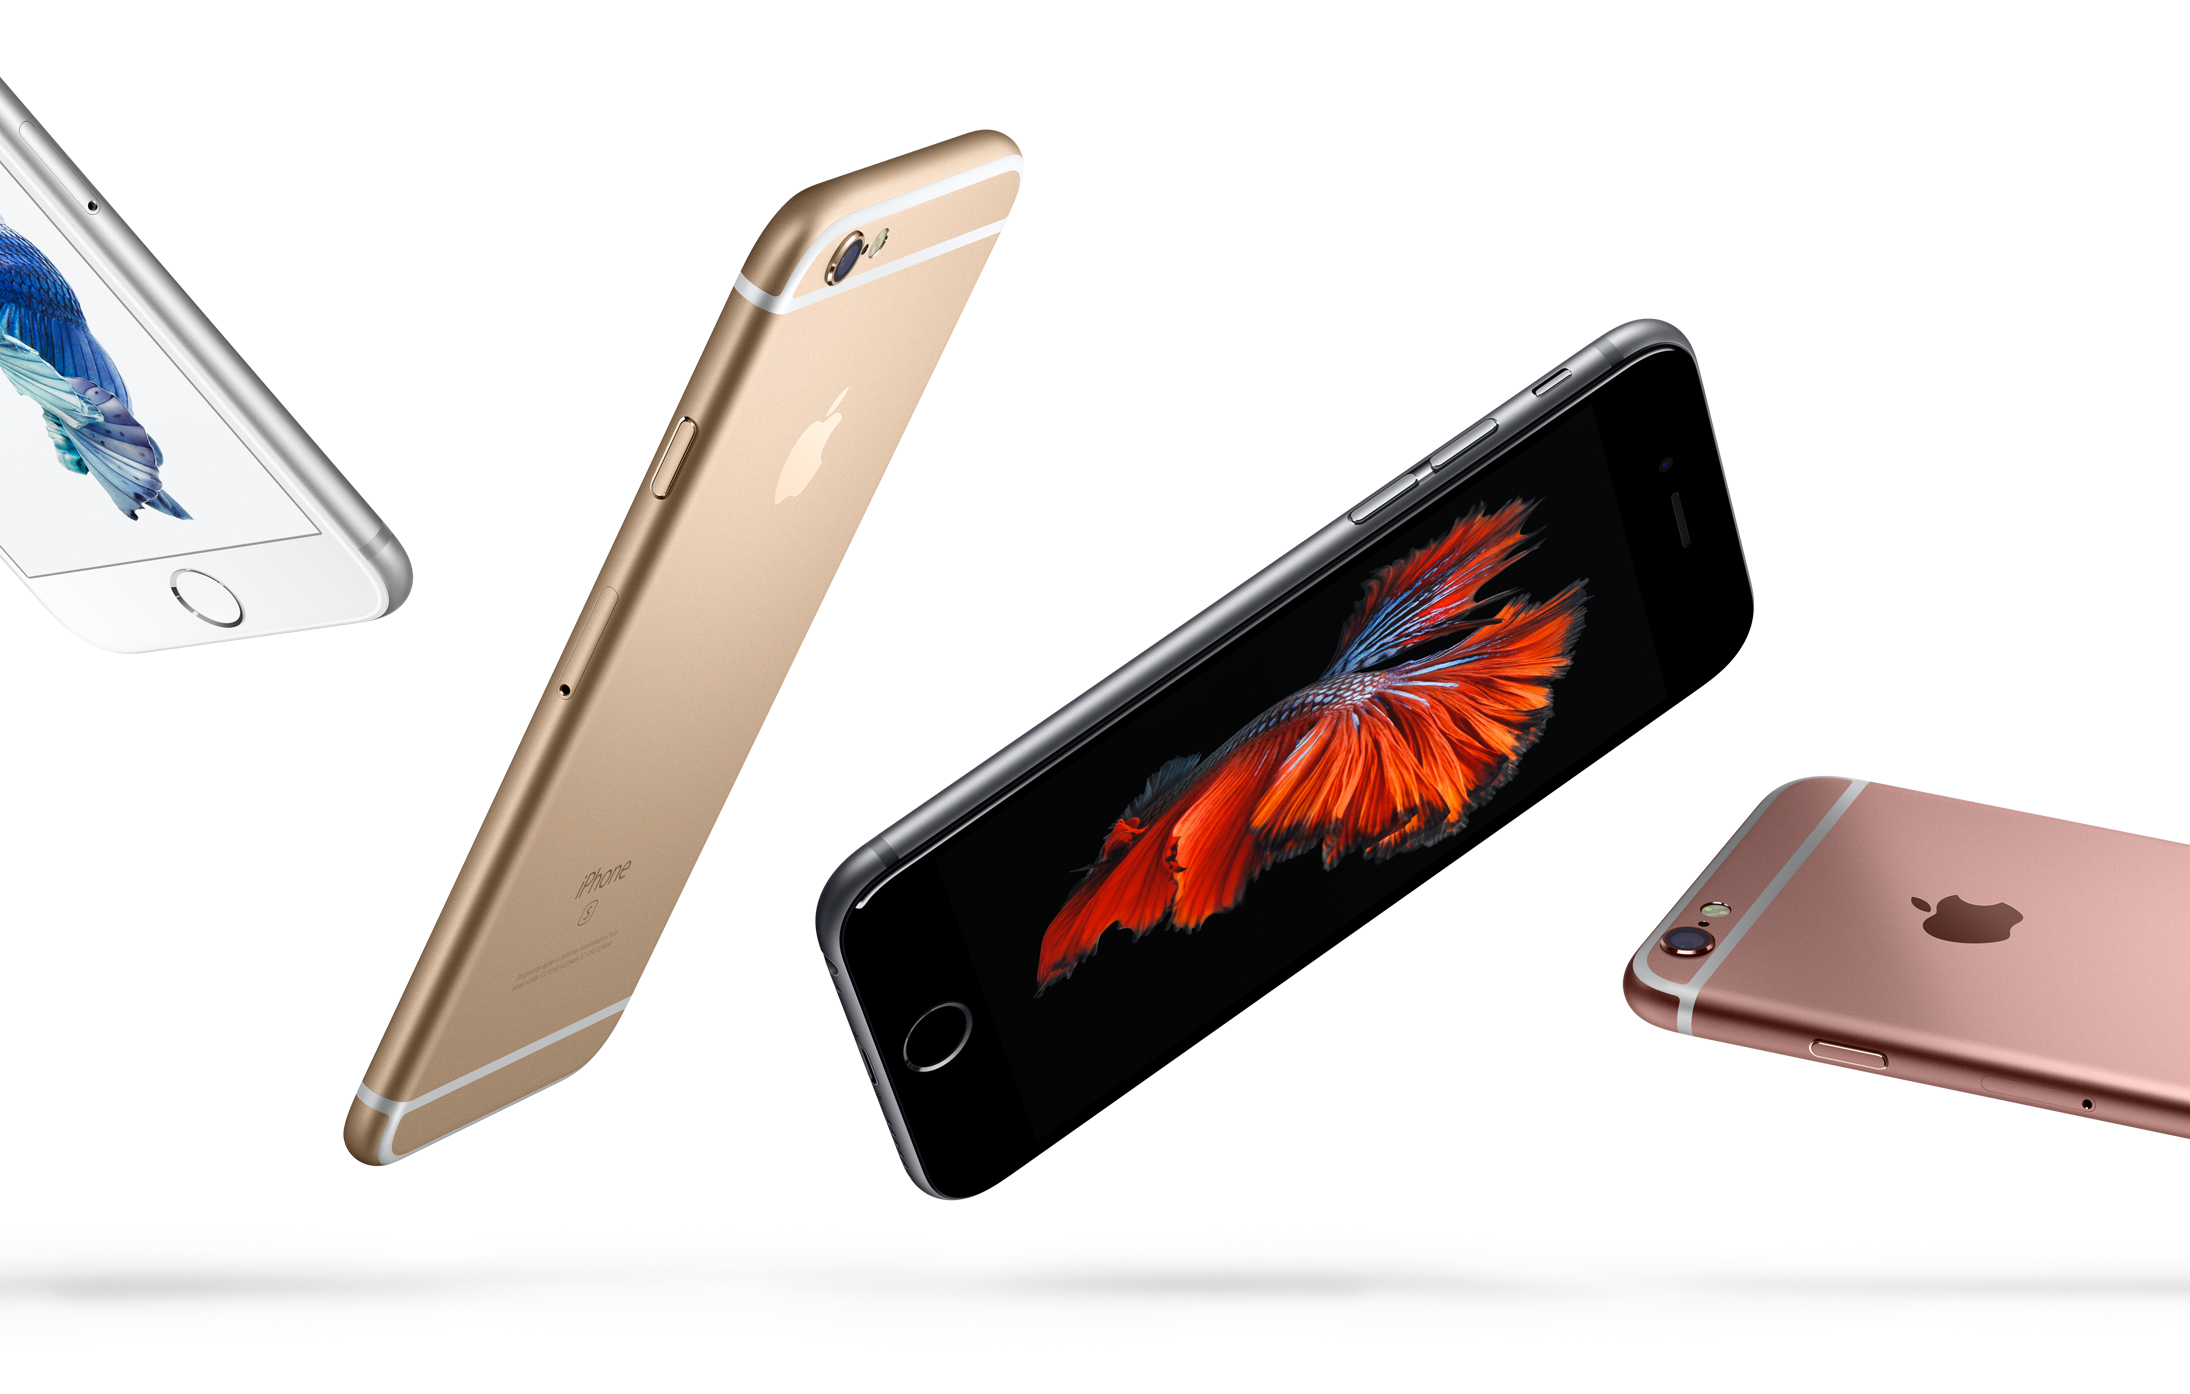 Sølv, Gull, Stellargrå og Rosegull: alle fargene dagens generasjon iPhone kommer levert med.